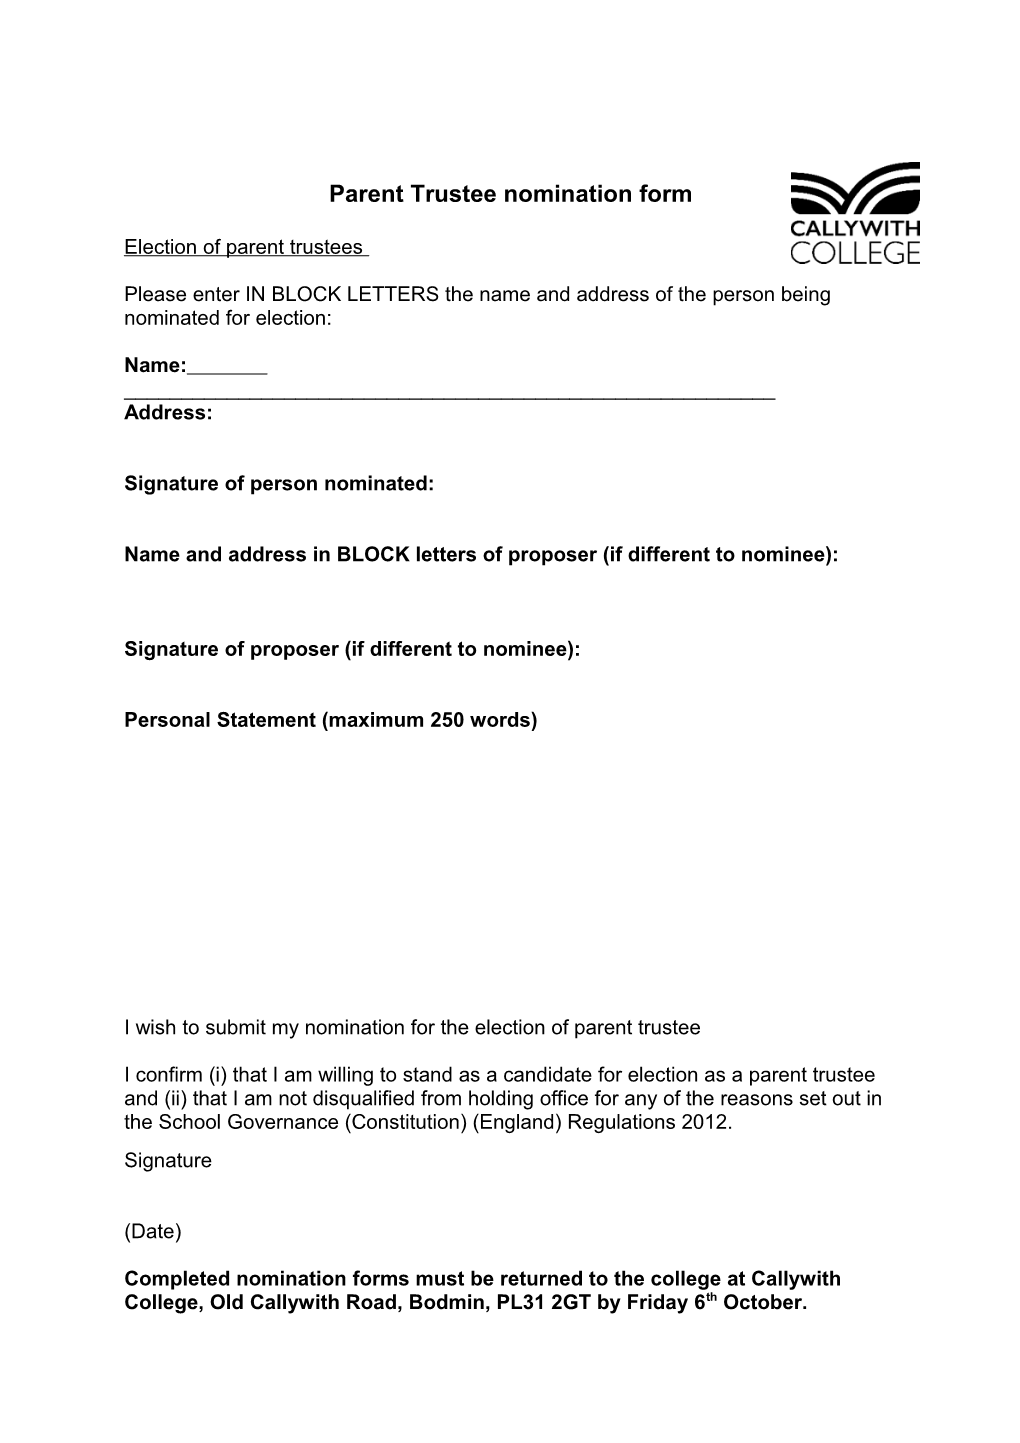 Parent Trustee Nomination Form